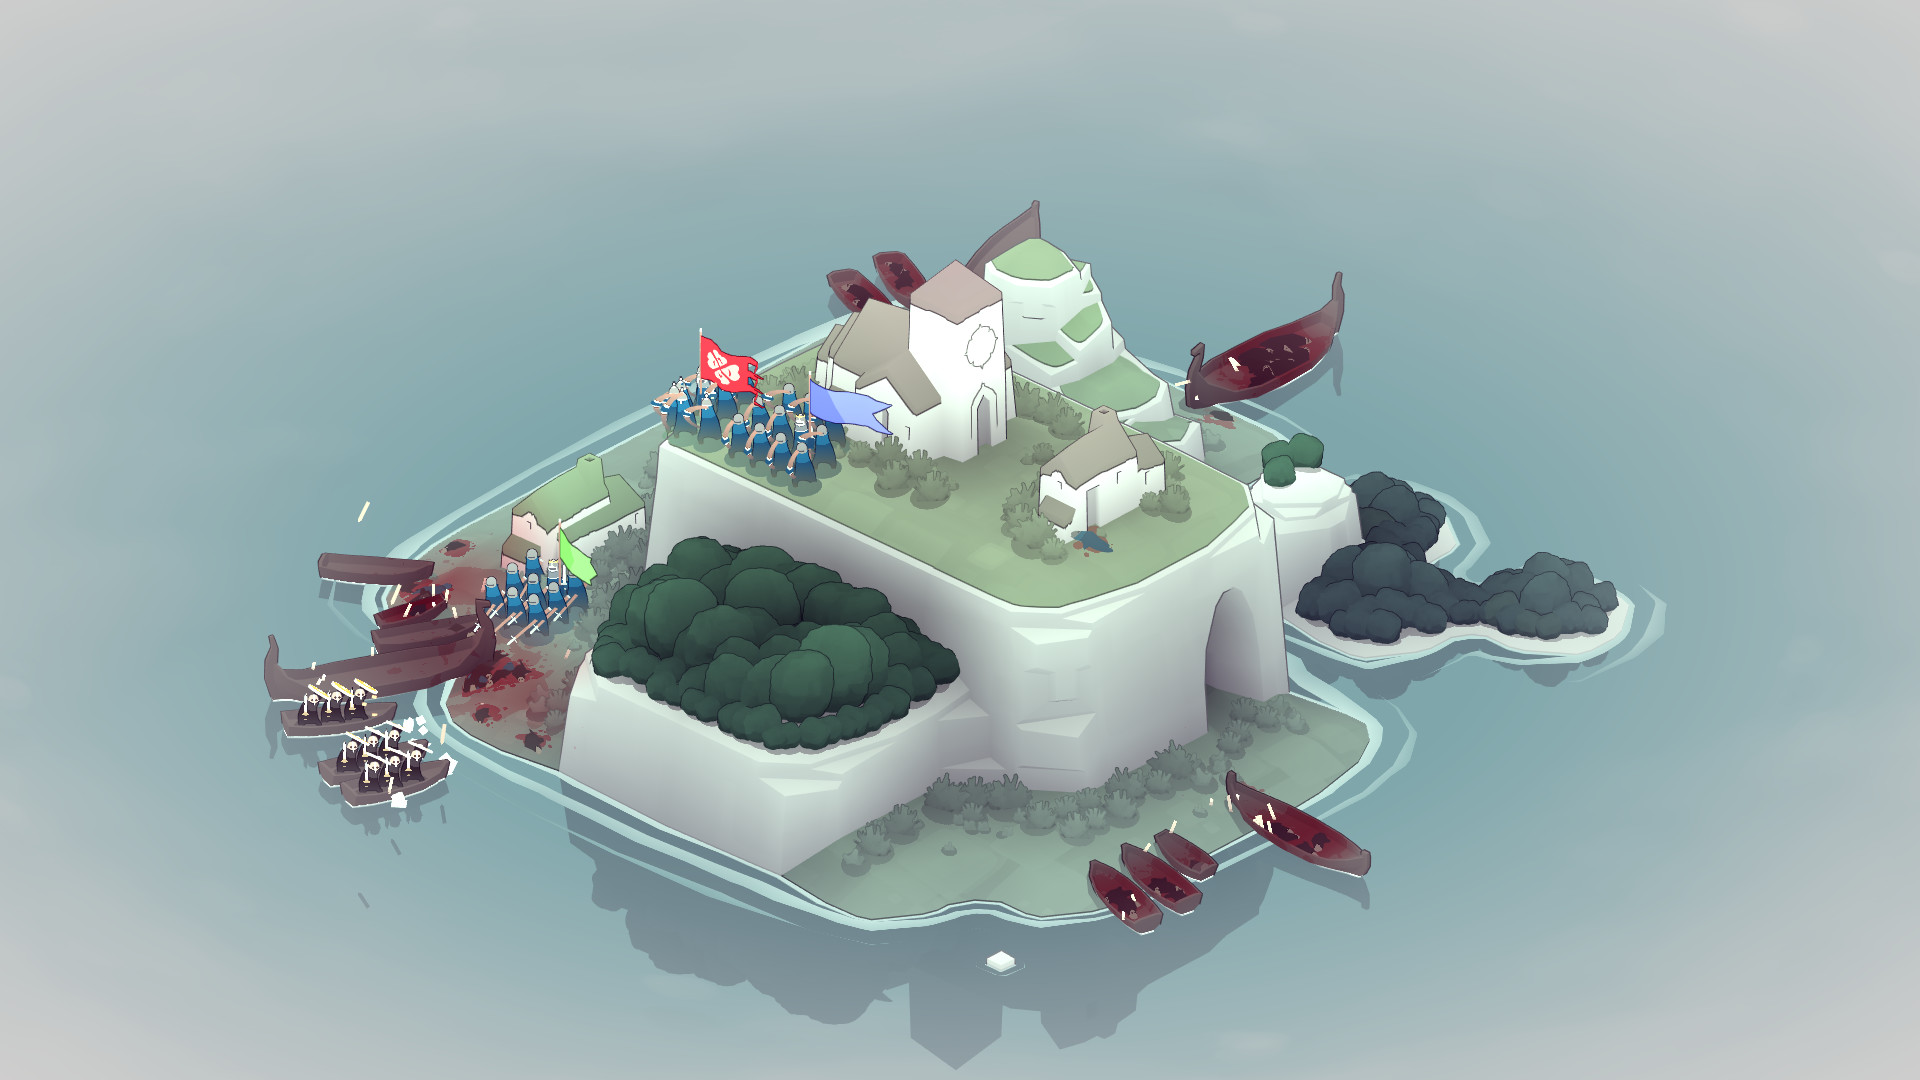 Los mejores juegos de estrategia móvil: Bad North. La imagen muestra una isla con varios grupos de personas